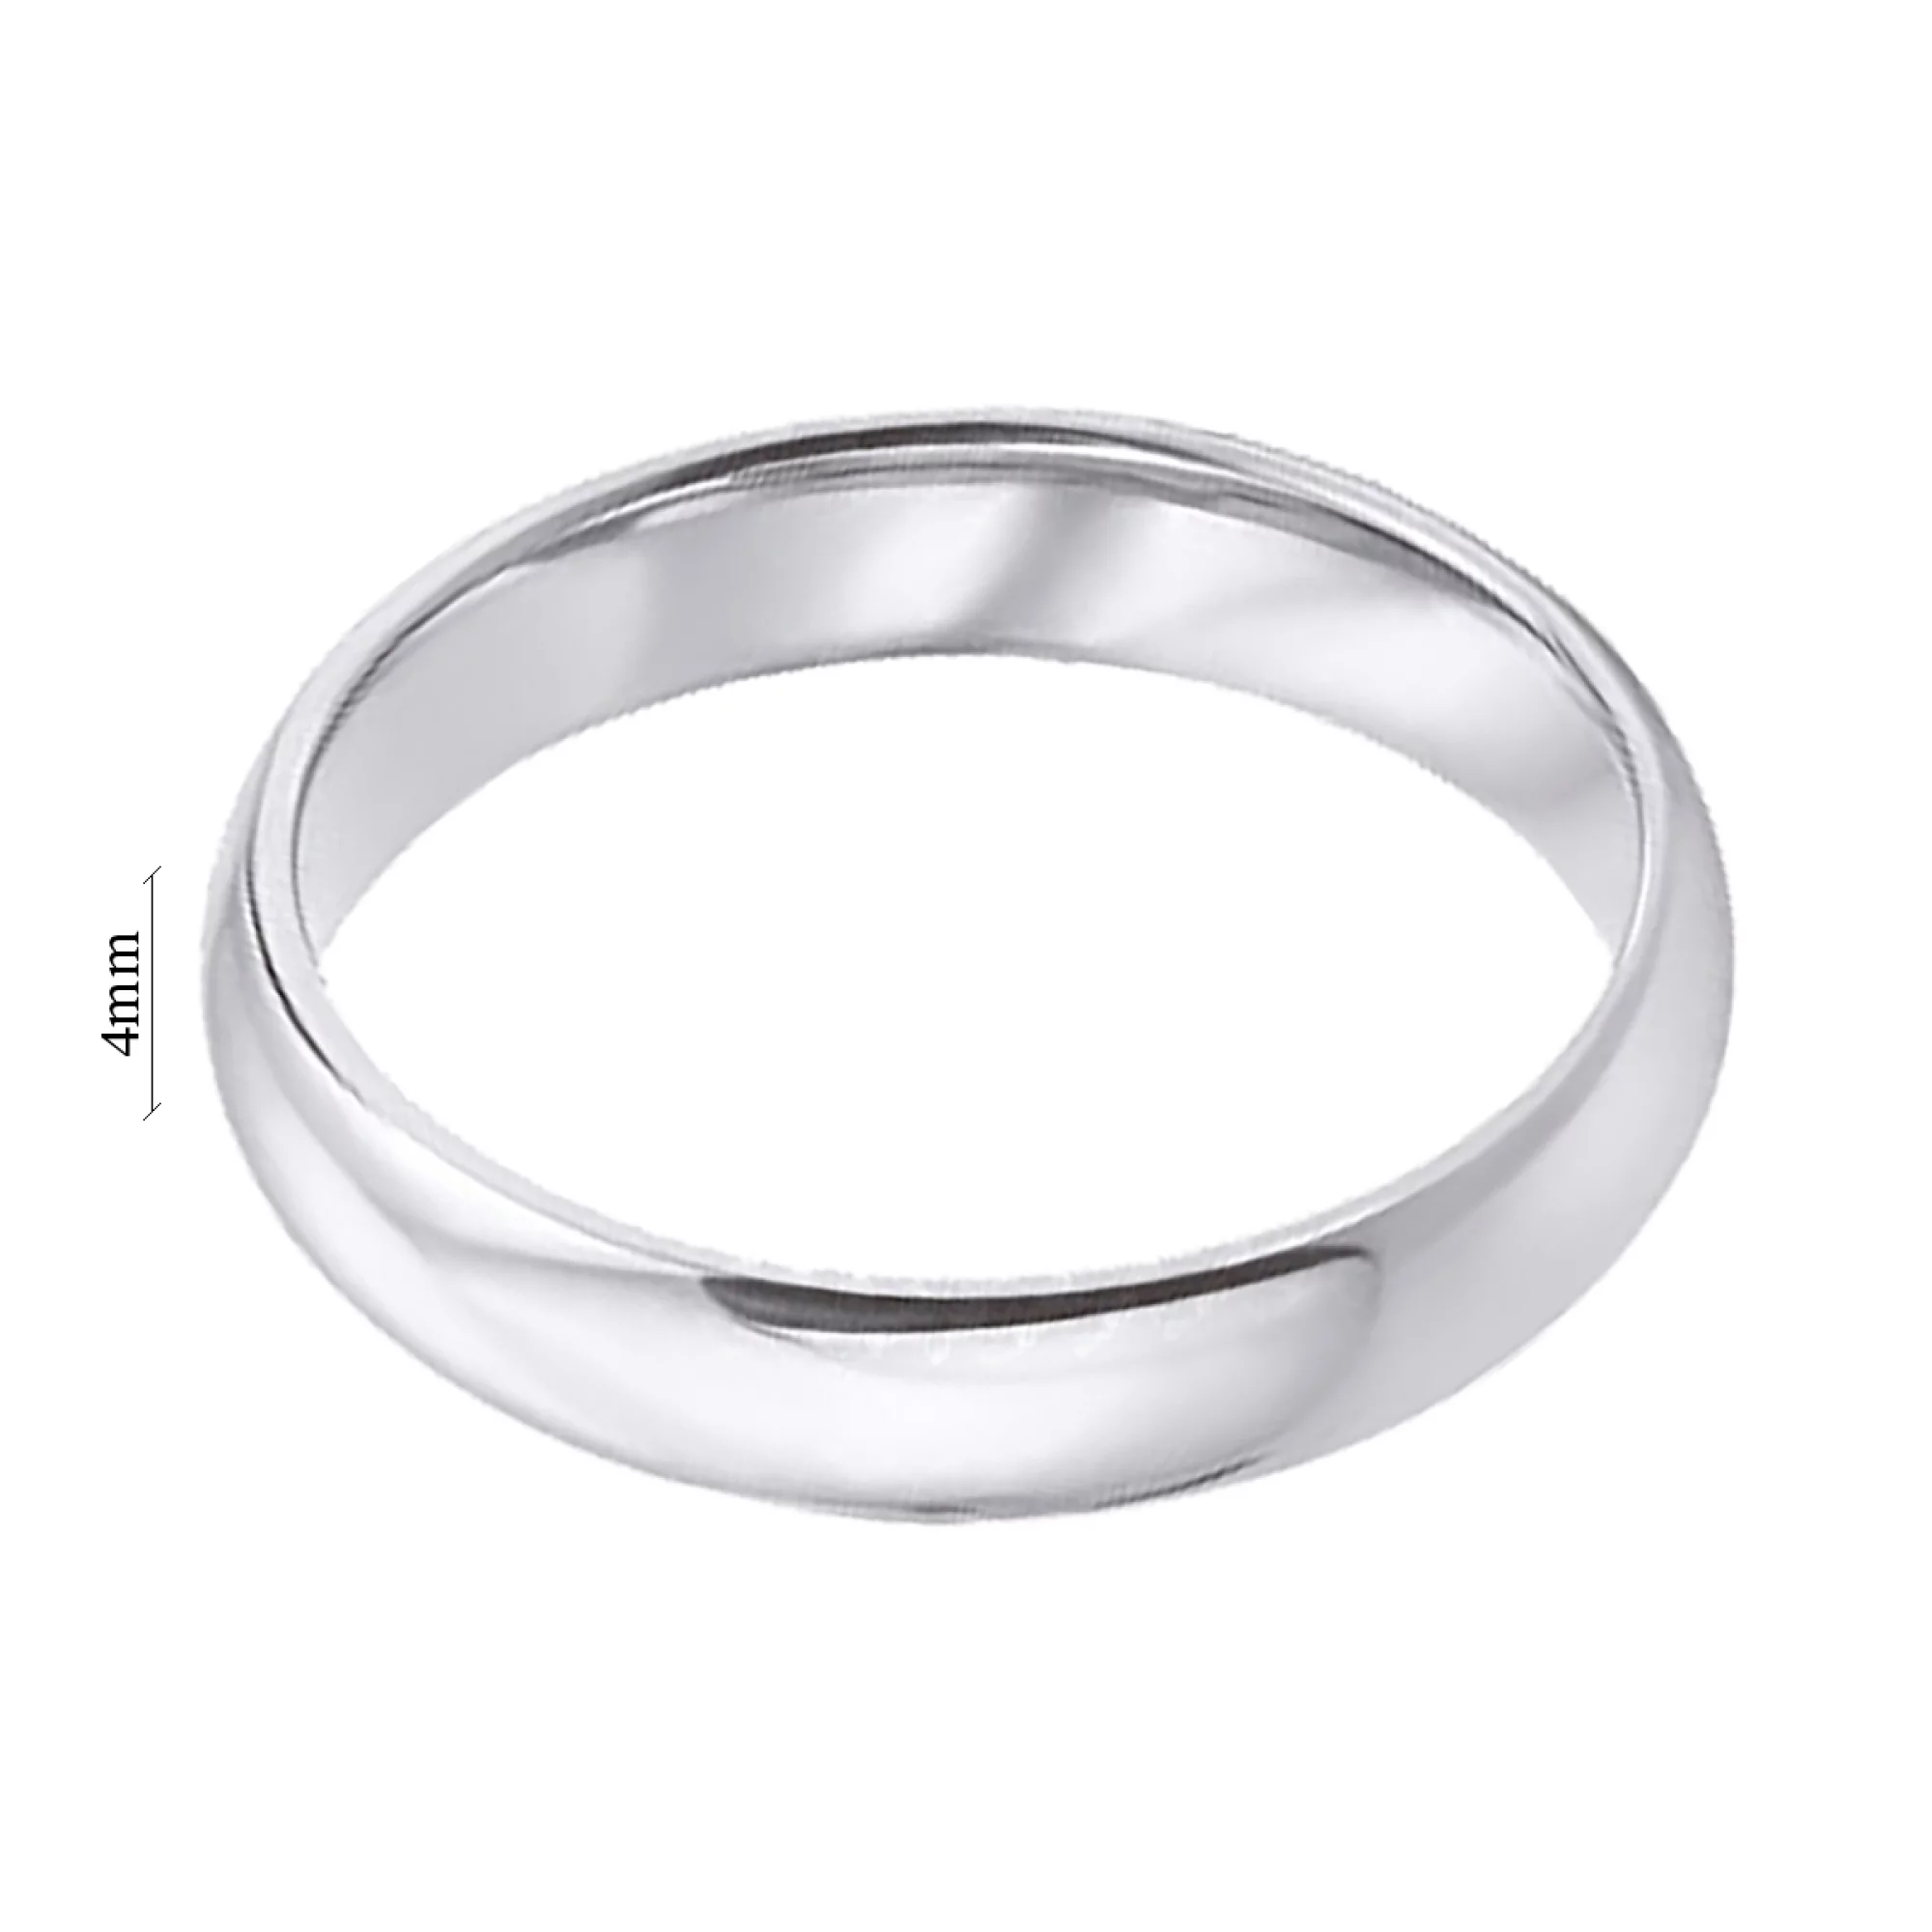 Обручальное кольцо комфорт из белого золота в классическом стиле - 1353549 – изображение 4